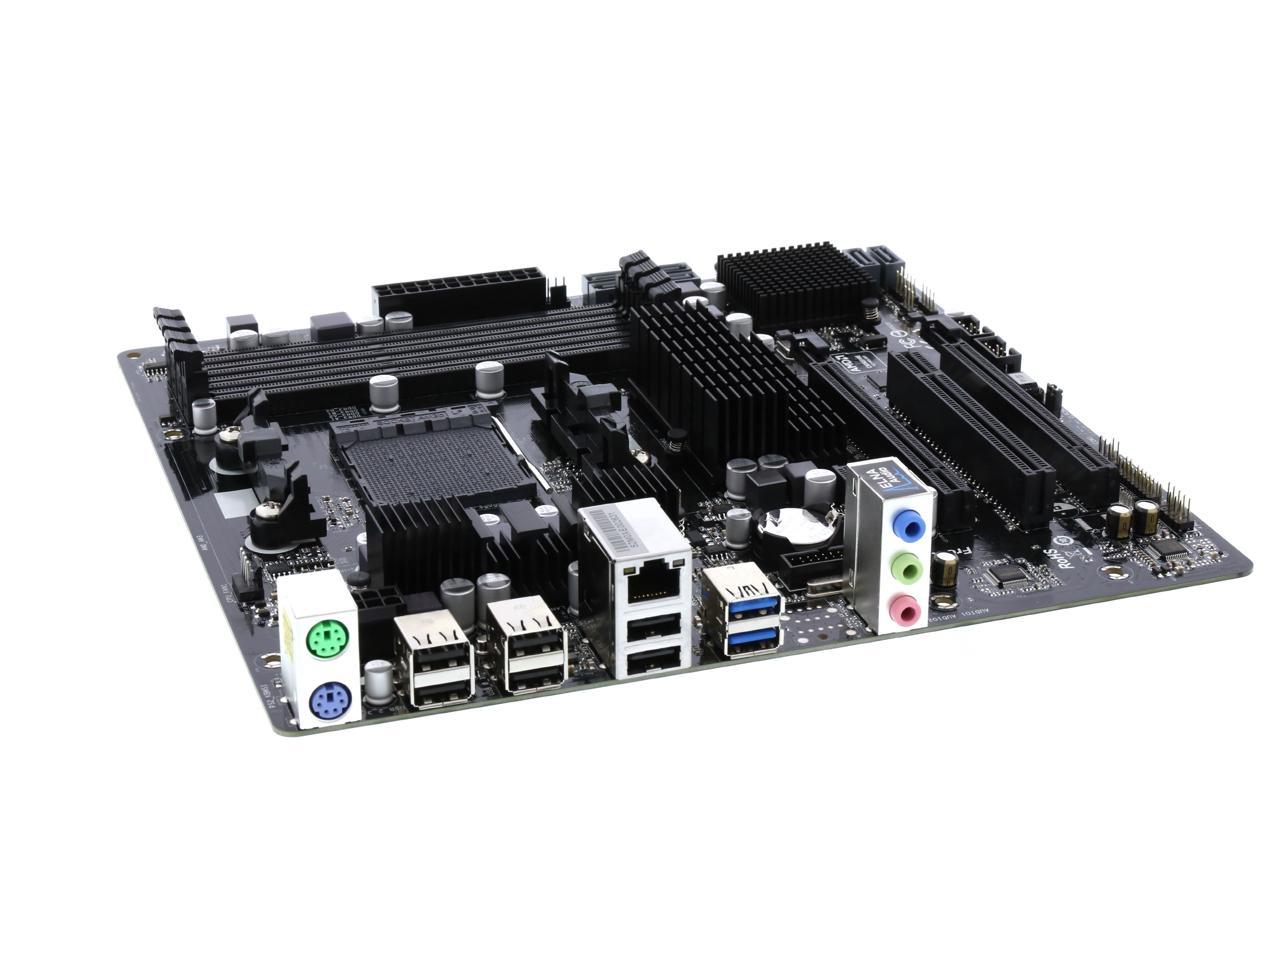 ASRock 970M Pro3 Mainboard Sockel AM3+ Micro ATX, 4x DDR3 Speicher, 2x USB 3.0, SATA3 6.0 Gb/s 